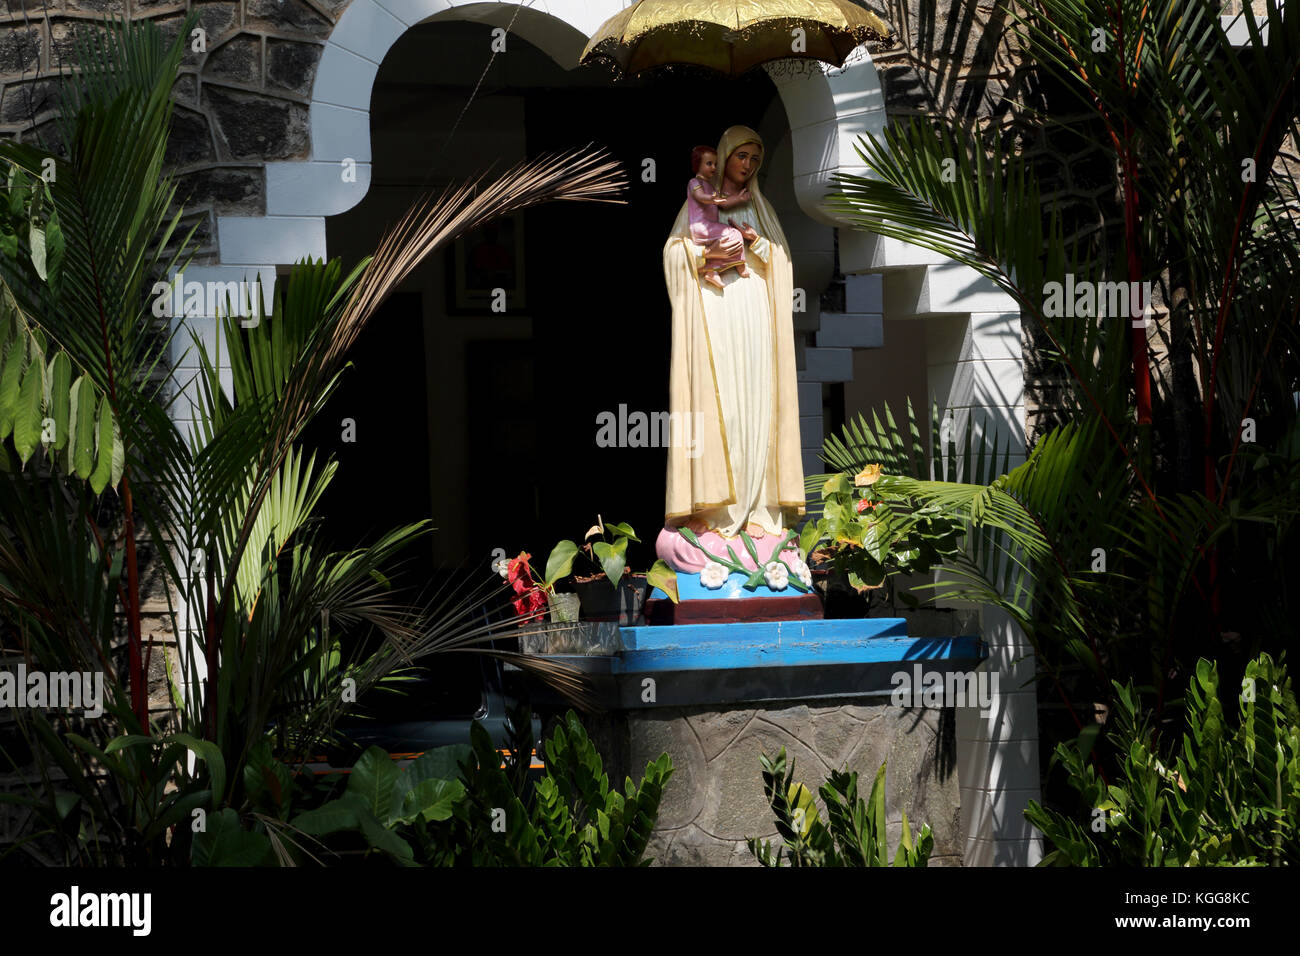 Basilica di Nostra Signora di Lanka tewatte ragama sri lanka statua della Vergine Maria e il bambino Foto Stock